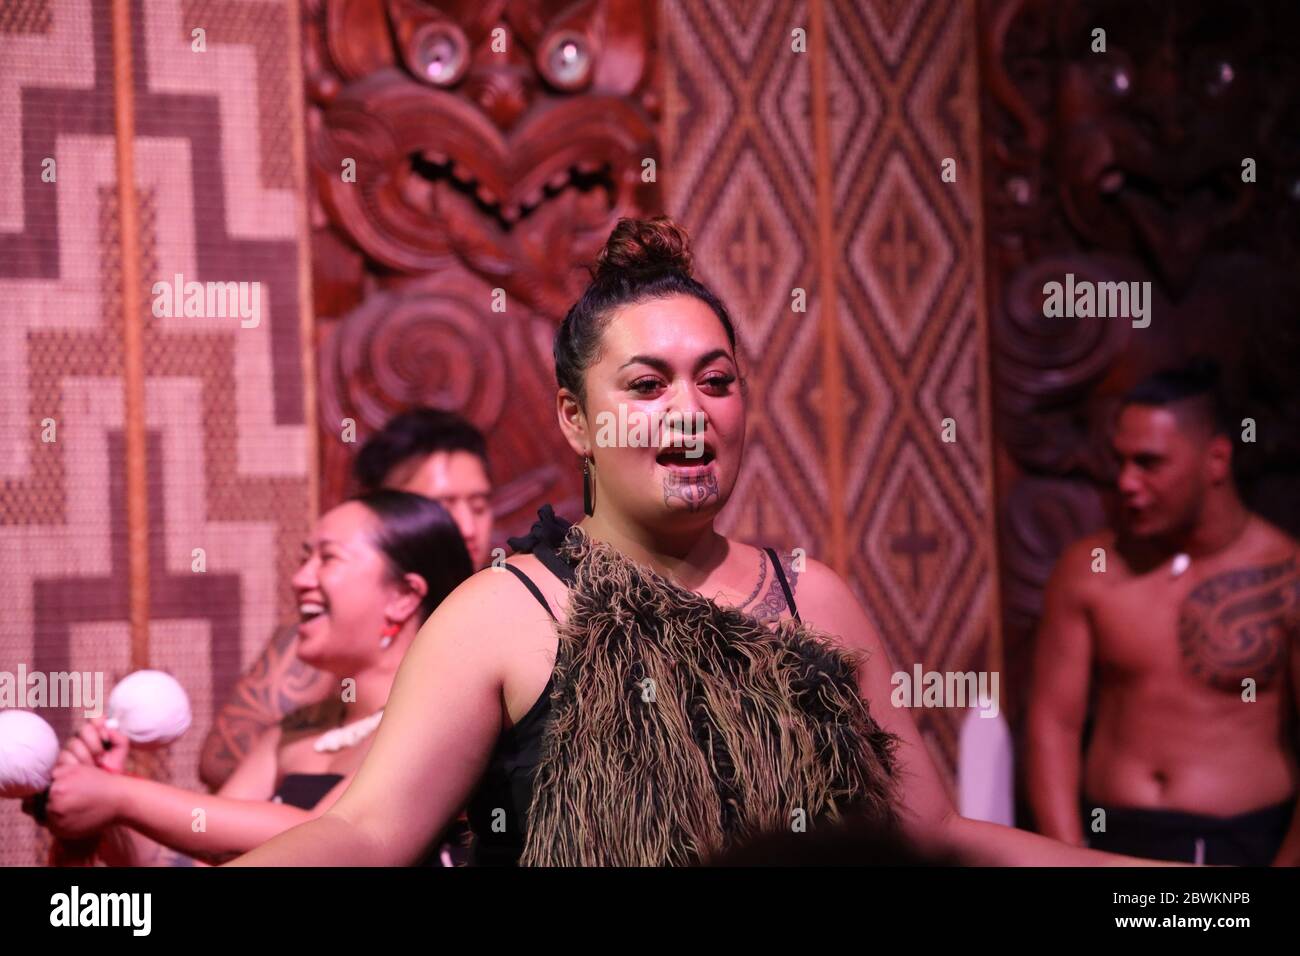 Cérémonie maorie/spectacle culturel à la salle de réunion, Waitangi. Femme avec tatouage au menton.zones du traité, Baie des îles, Île du Nord, Nouvelle-Zélande. Banque D'Images